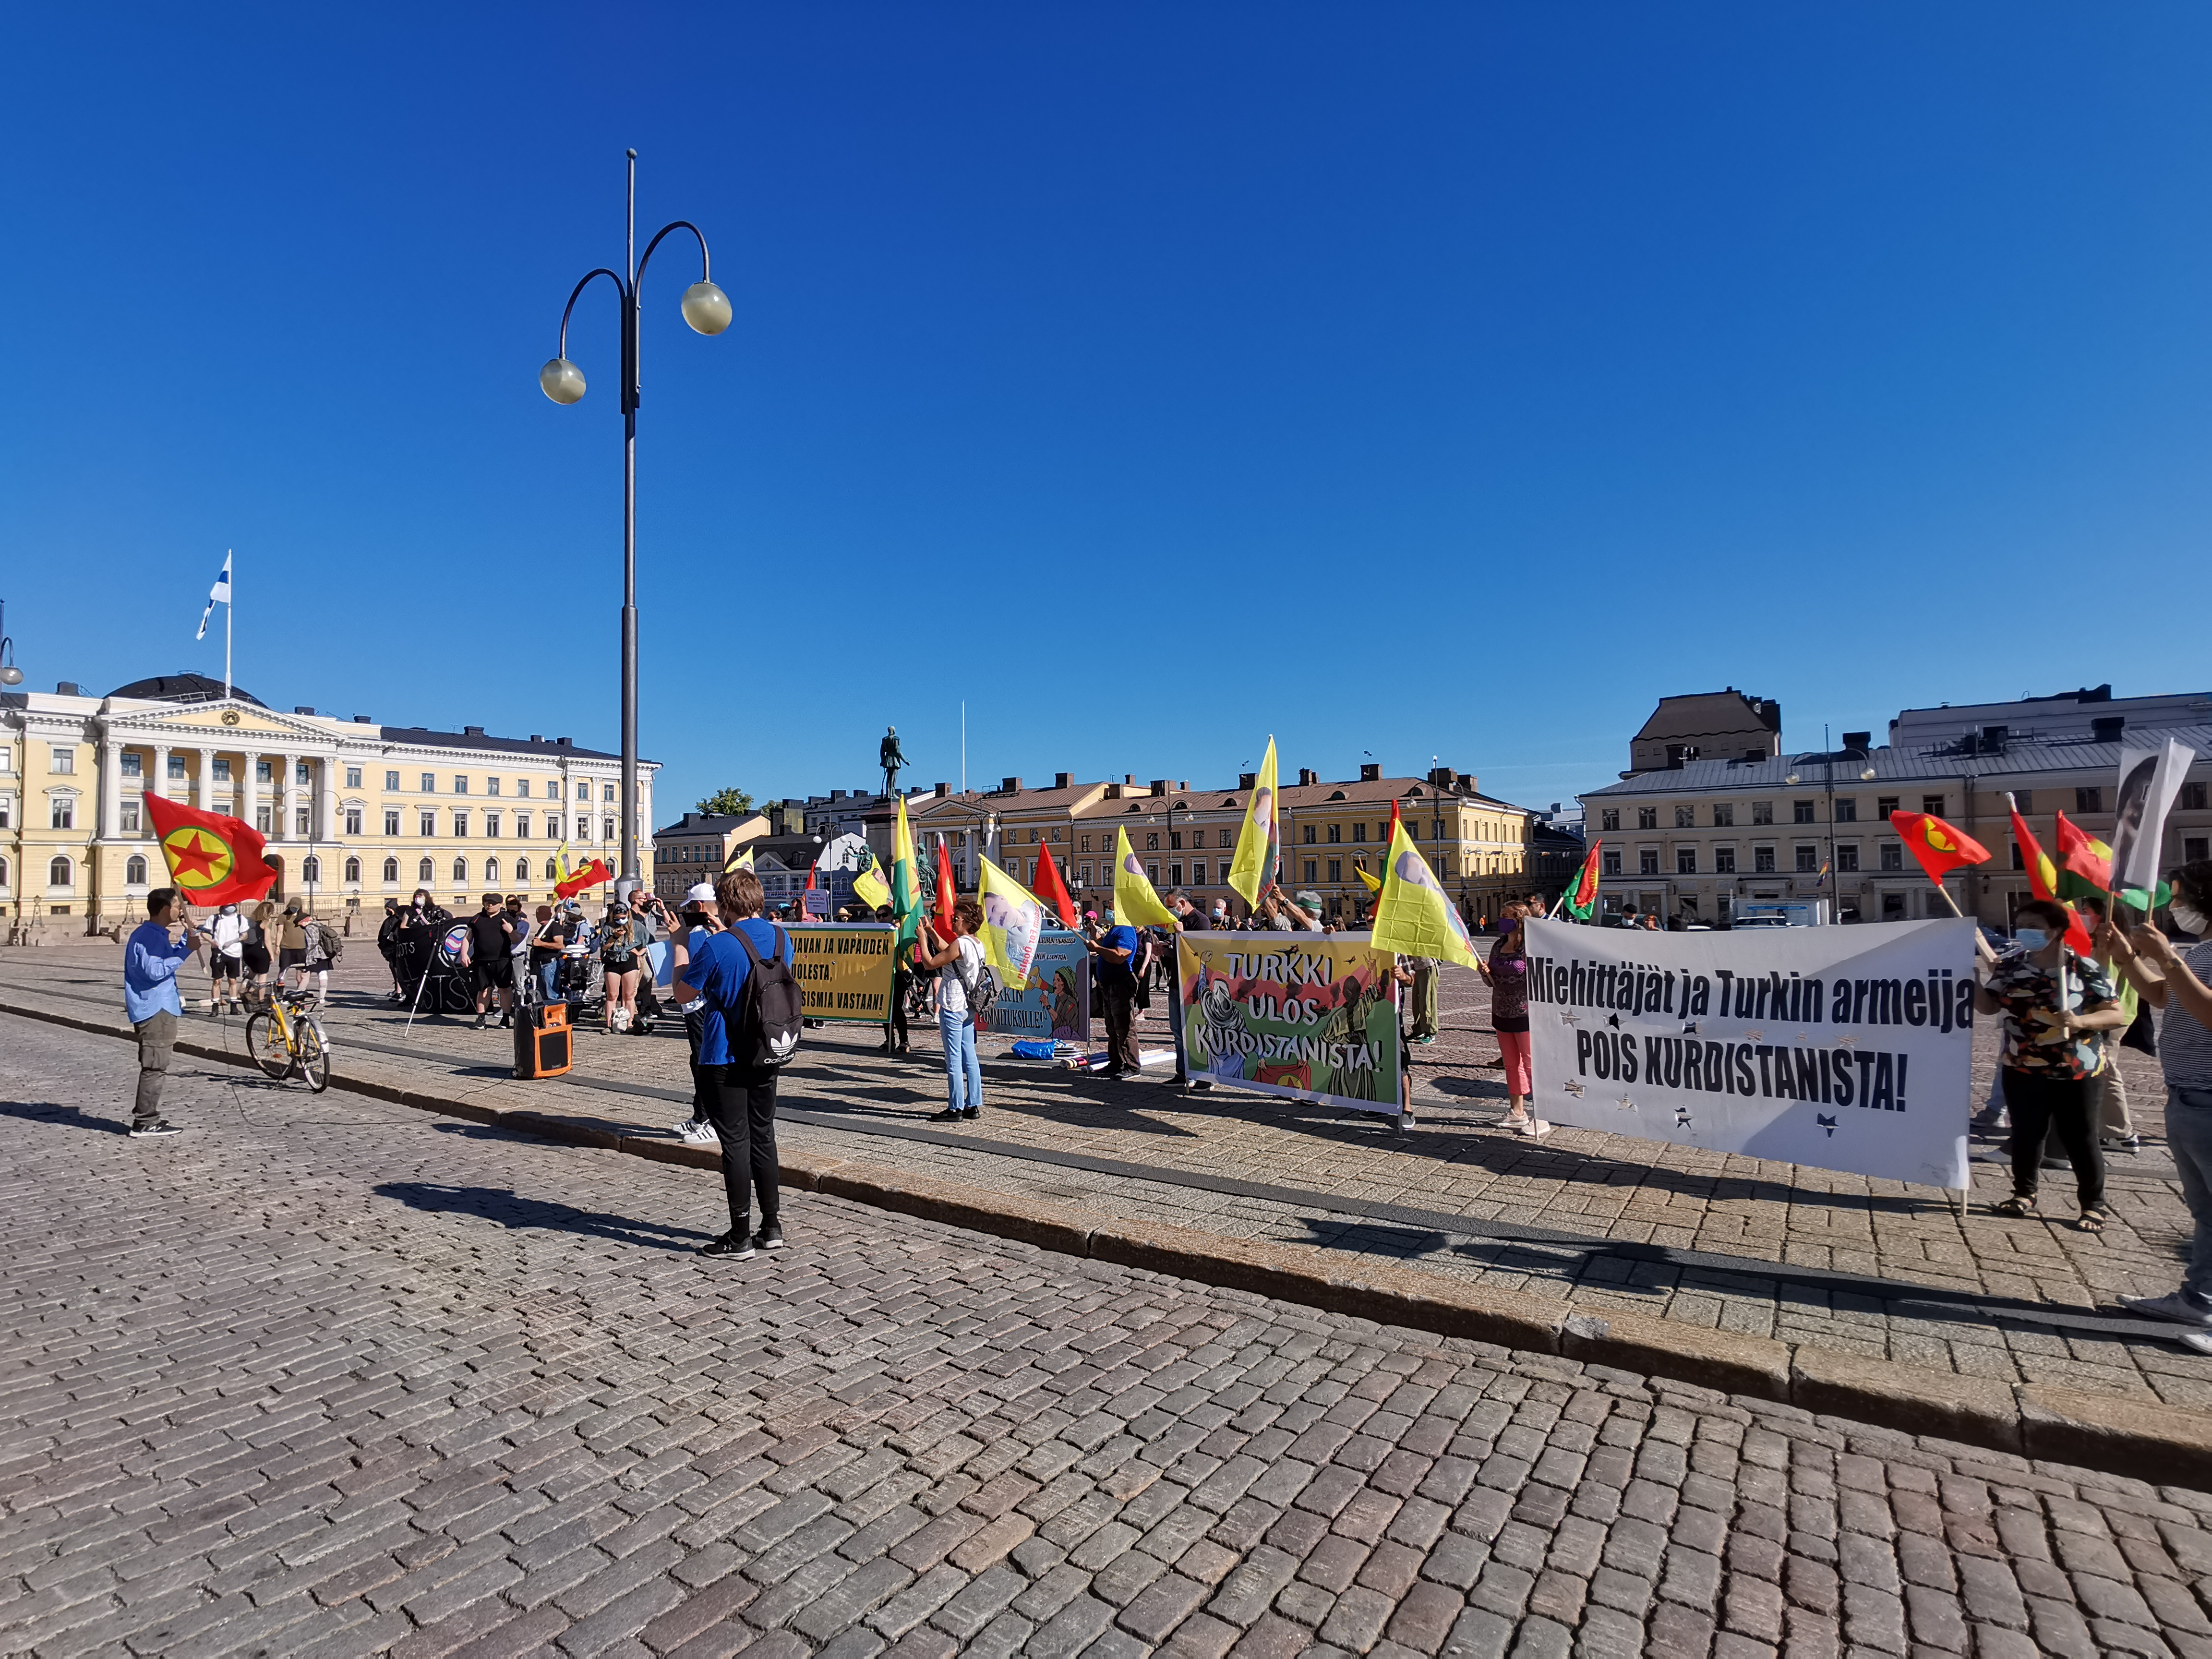 Turkki ulos Kurdistanista mielenosoitus Helsinki 3.7.2021 kuva 2 Jiri Mäntysalo